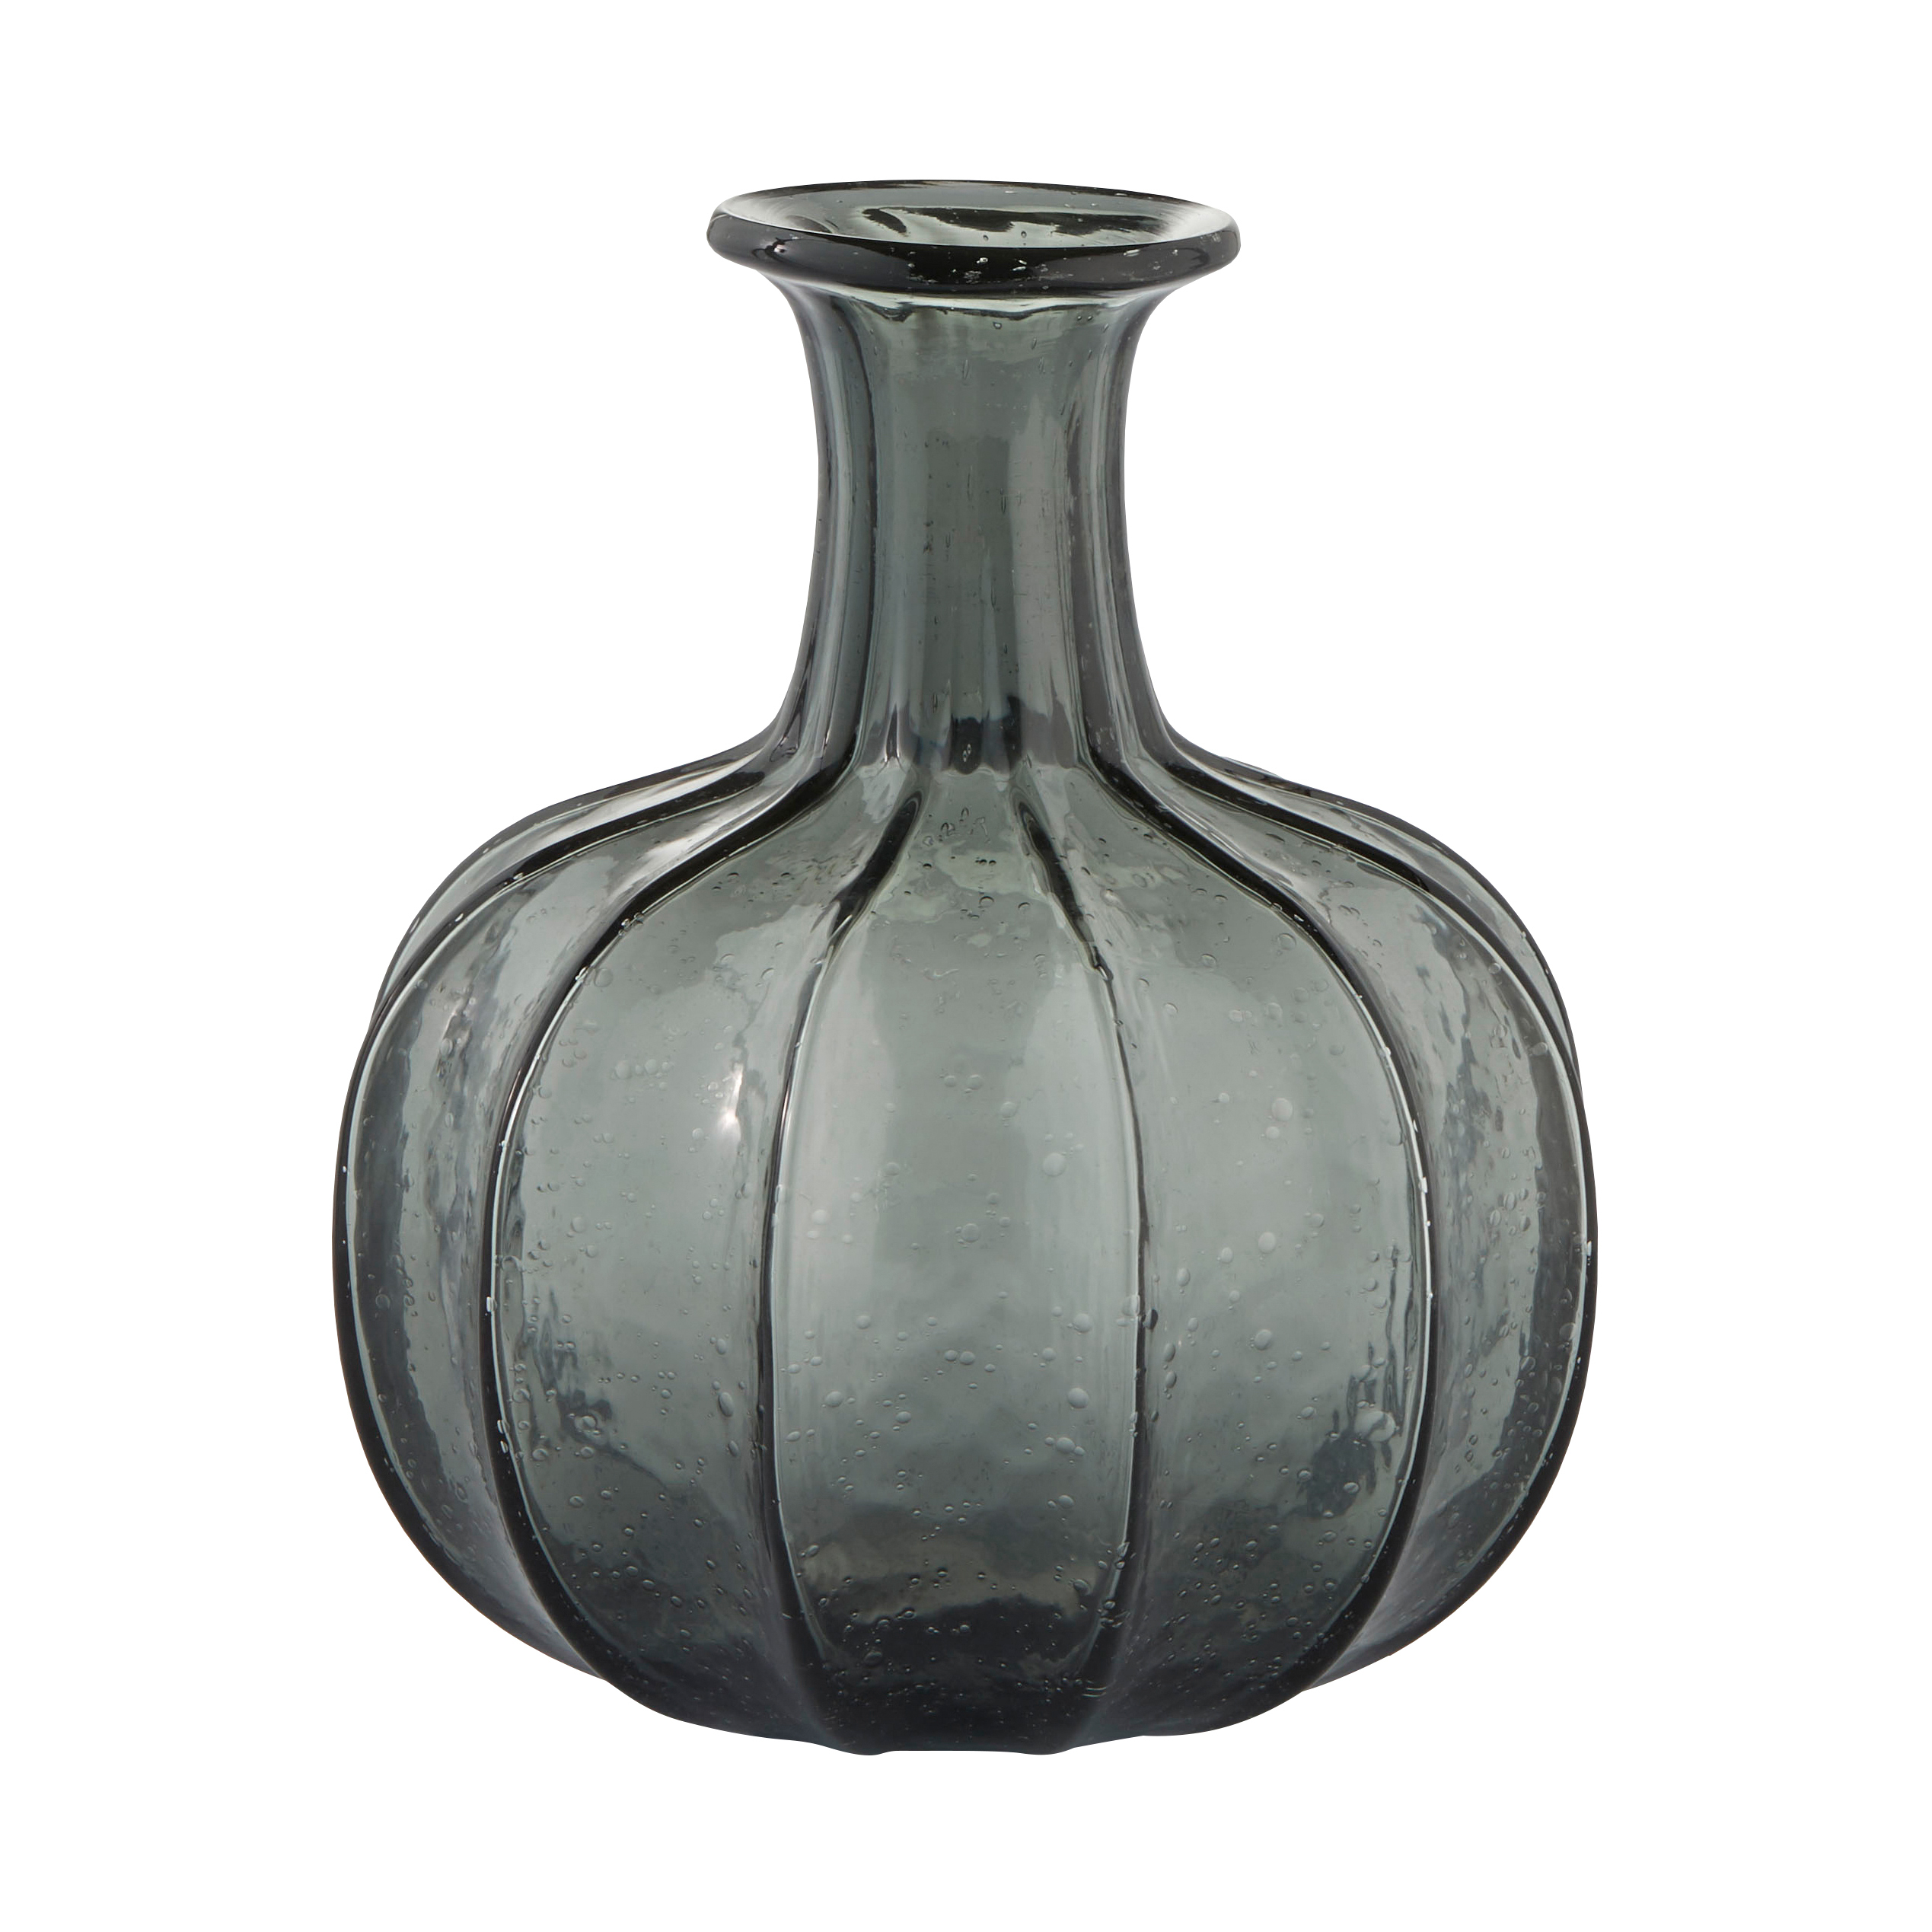 Miyanne Glass Vase - Smoke Grey - Large Glass Vase